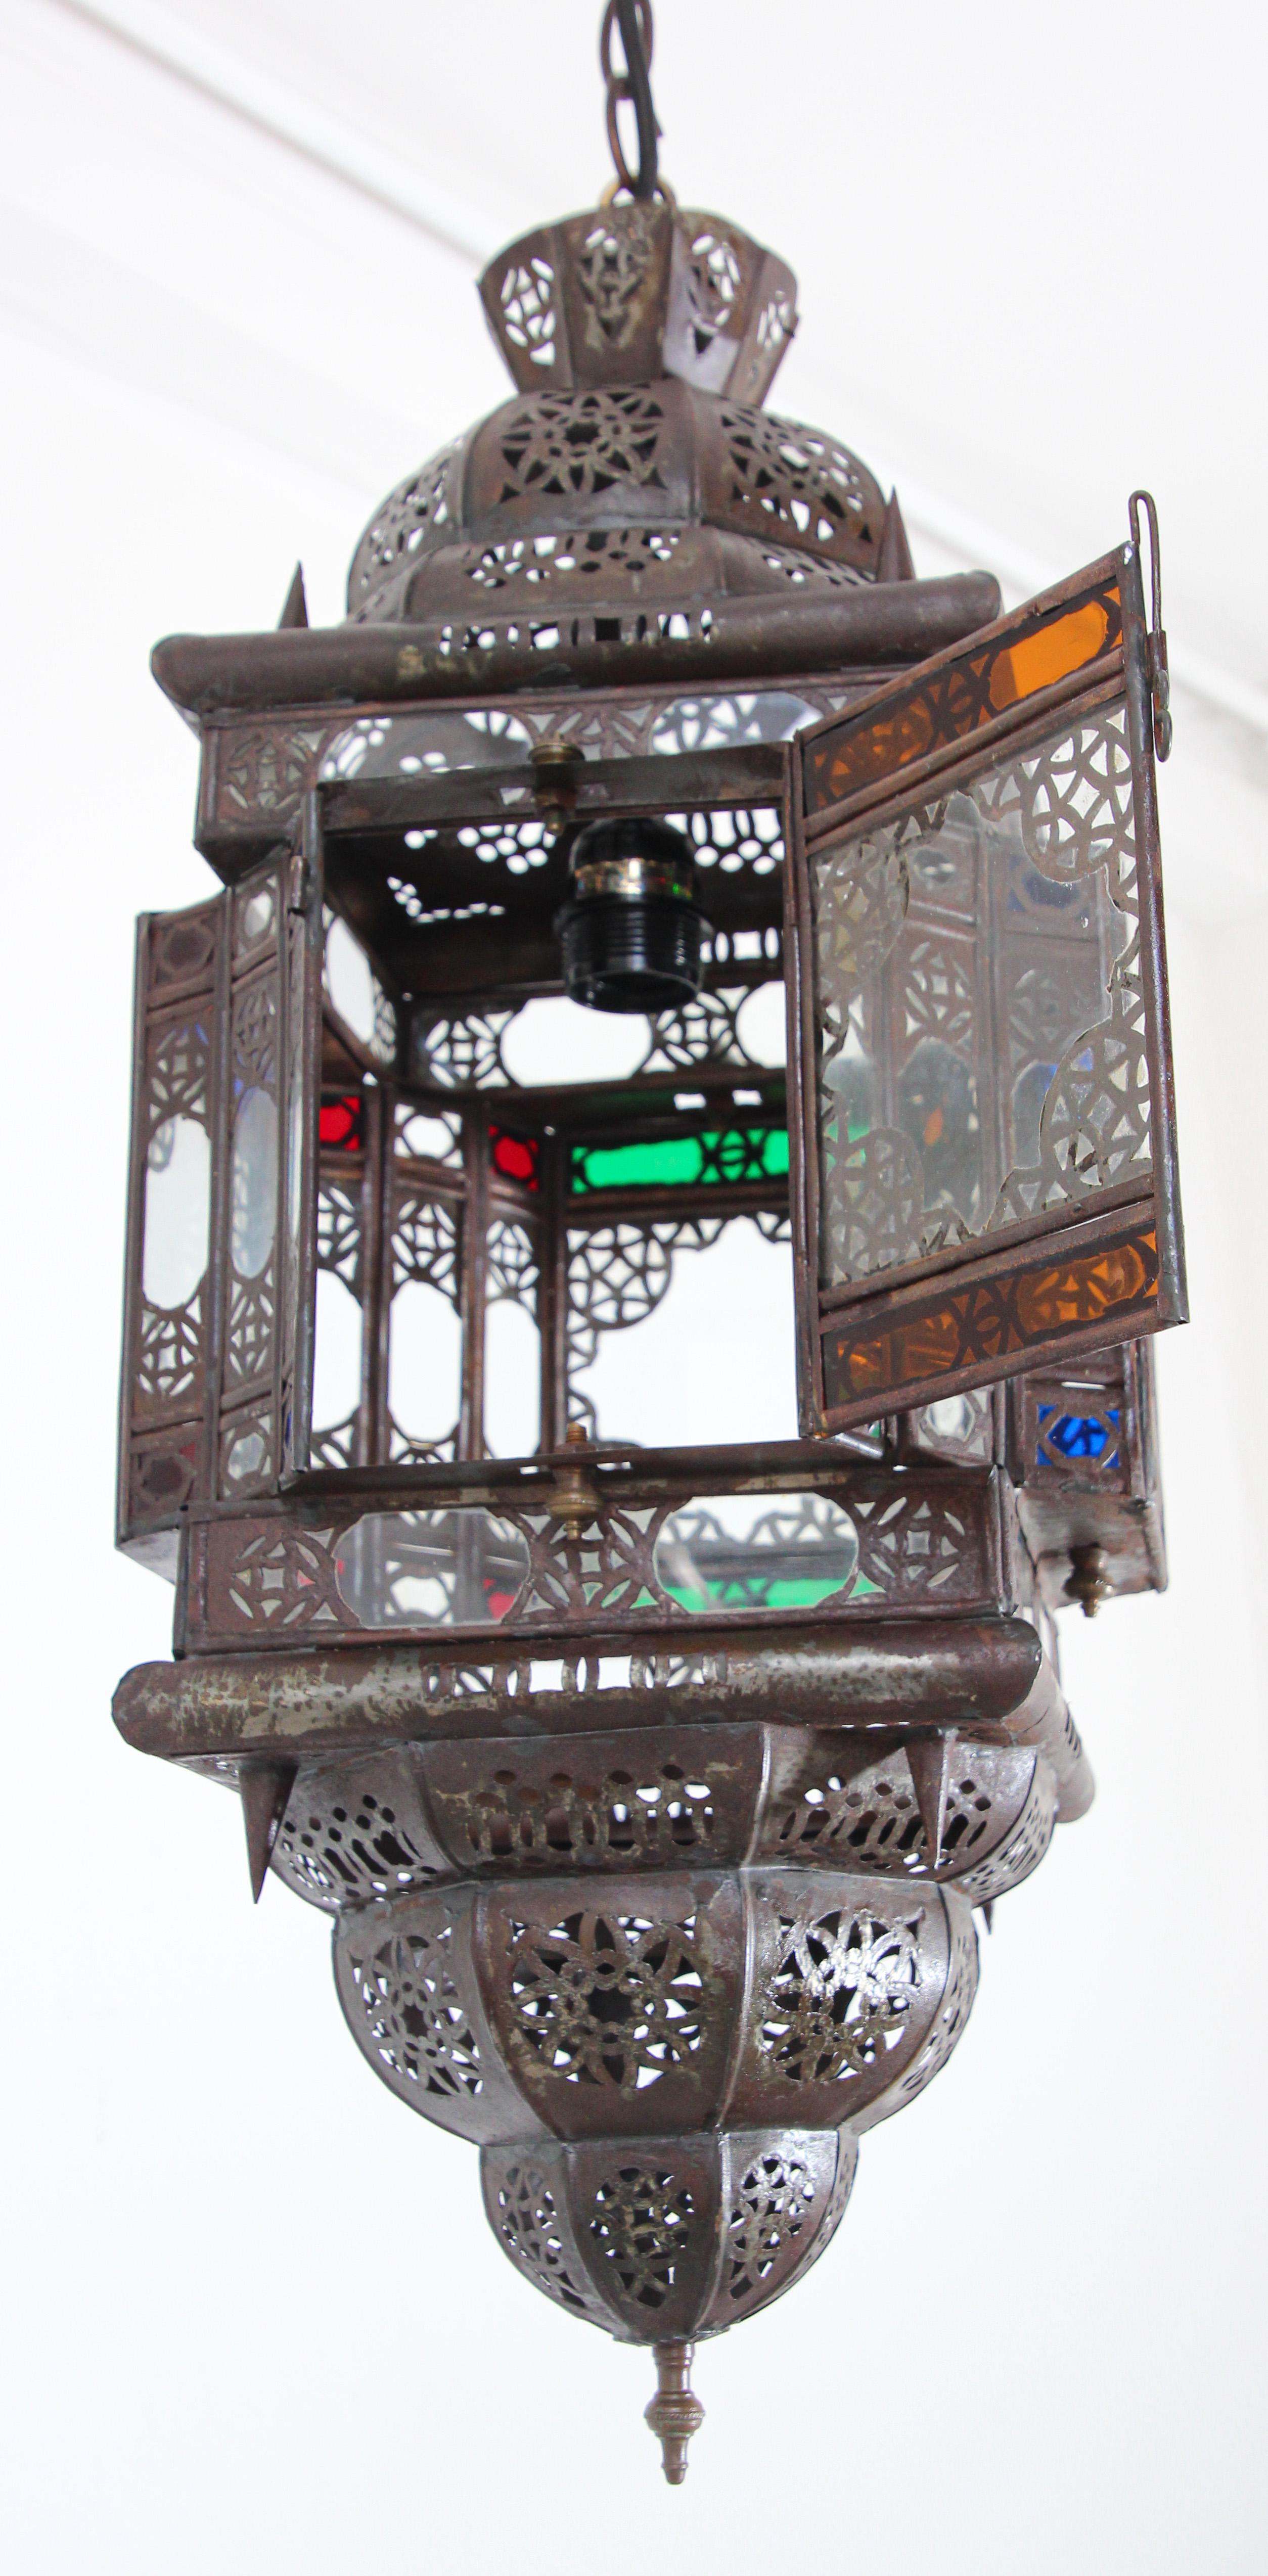 Vintage marokkanischen handgefertigte Leuchte mit Multi-Color Glas
Stilvolle, handgefertigte marokkanische Pendelleuchte aus mehrfarbigem, mundgeblasenem Glas und Metall in antiker Bronzeoptik.
Deckenleuchte im maurischen Stil mit kleinem